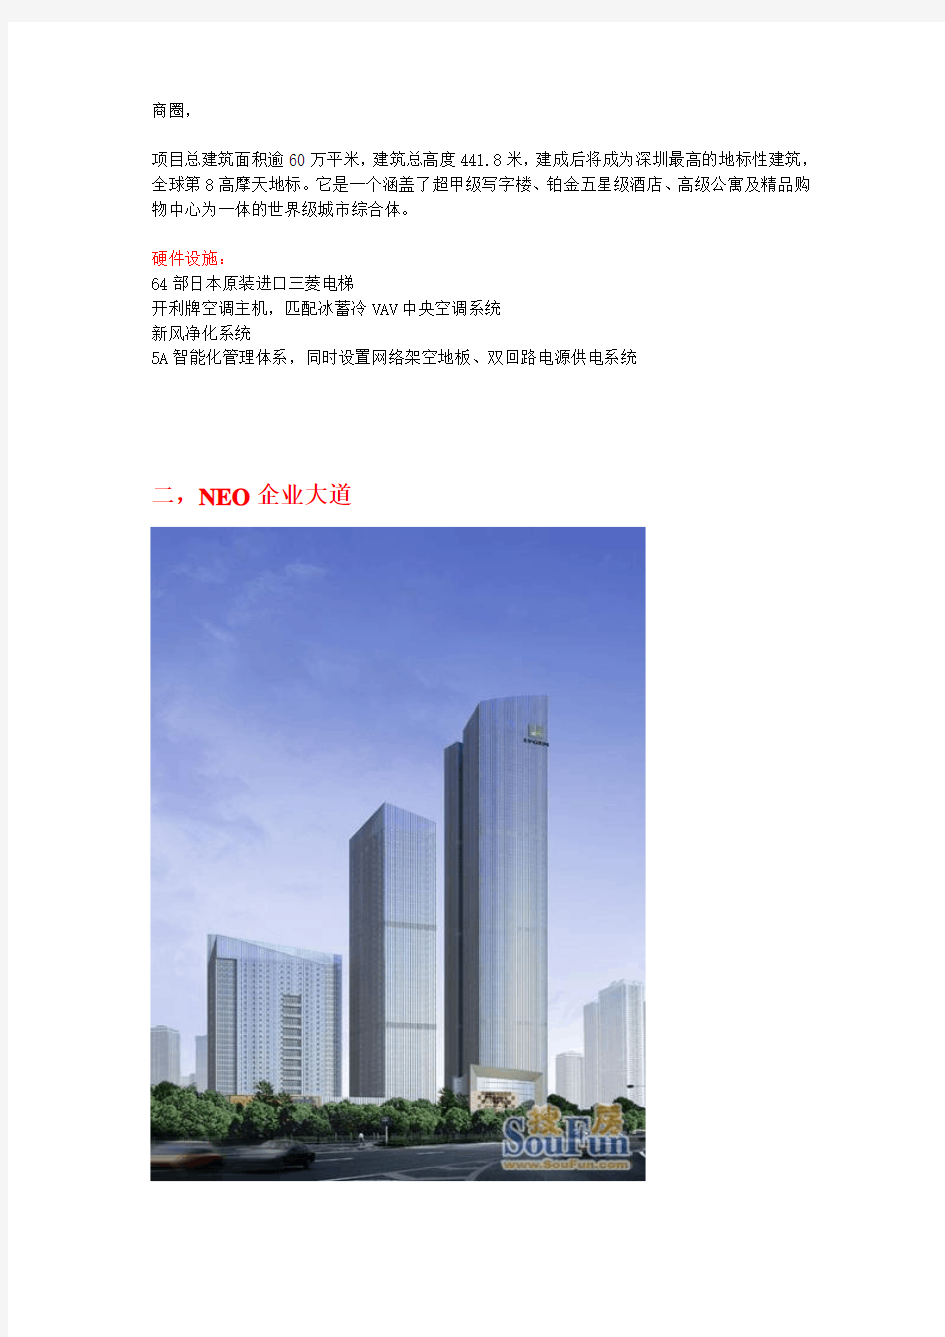 深圳在建高楼信息